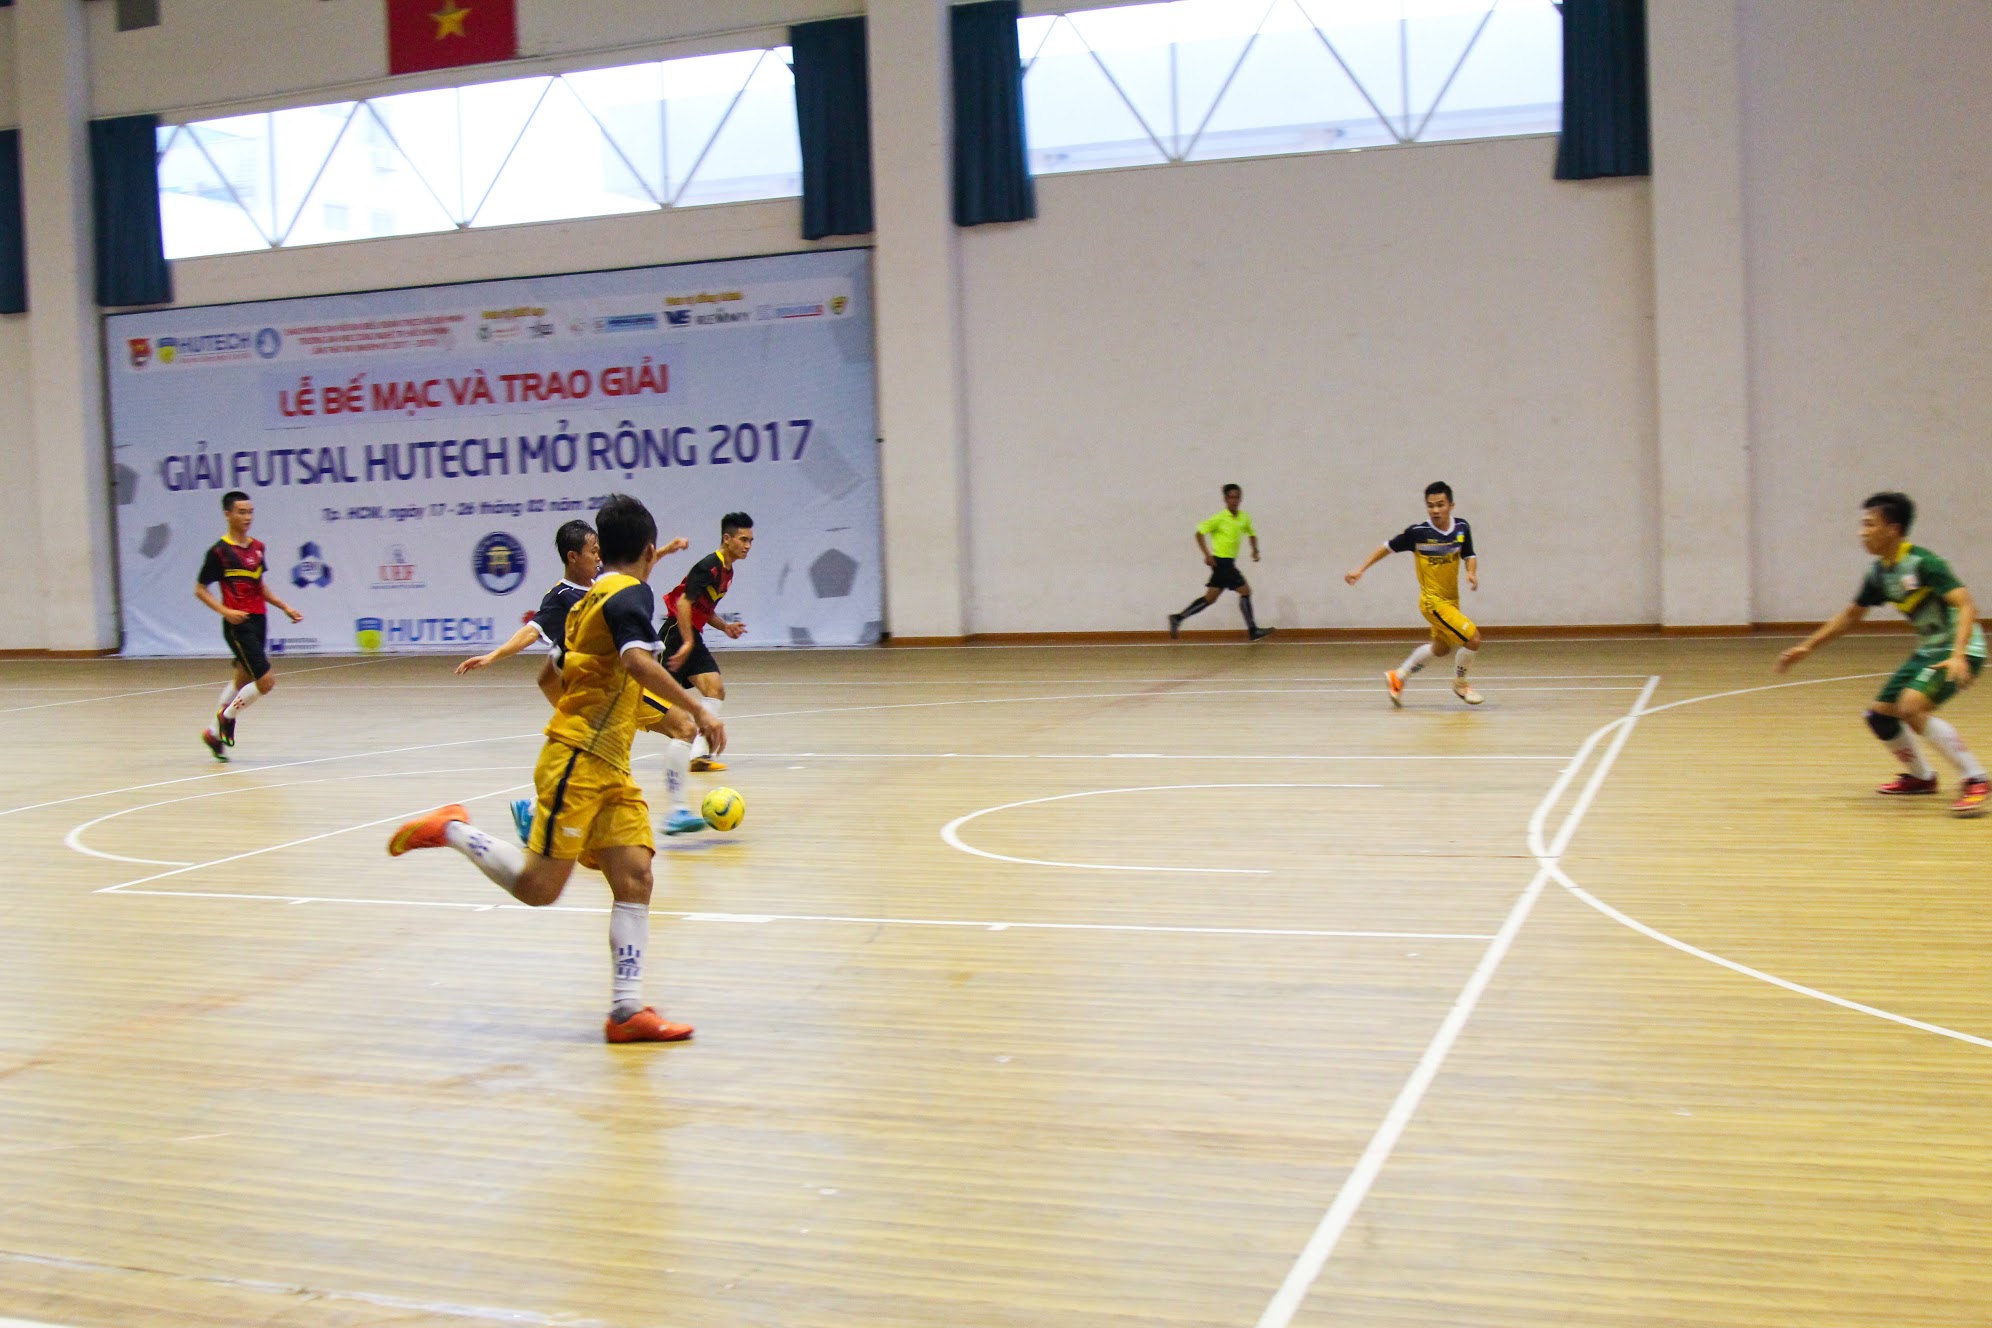 Vượt ĐH Công nghiệp TP.HCM, HUTECH vô địch “Giải Futsal HUTECH mở rộng 2017" 57